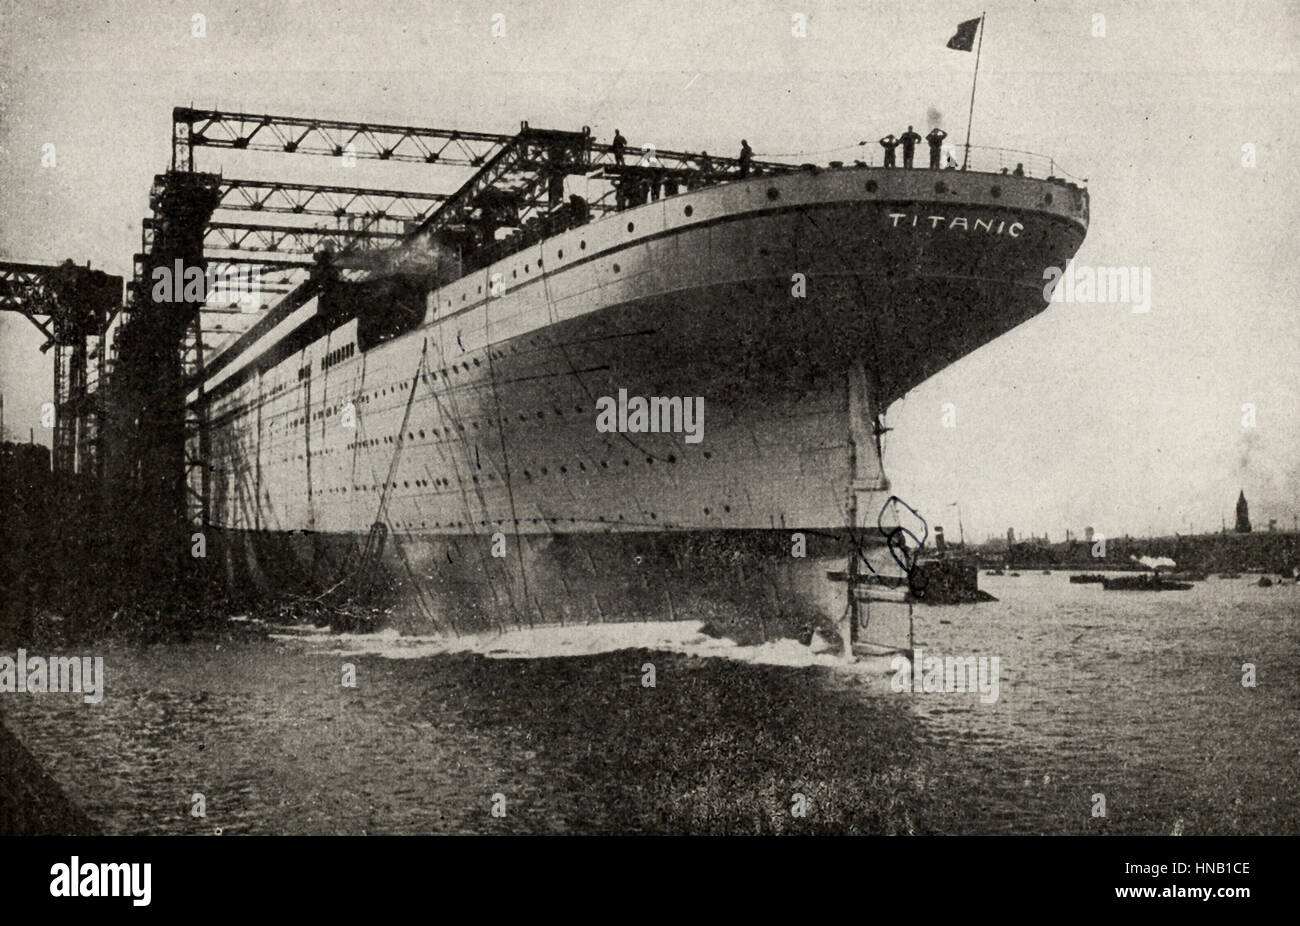 Die Titanic gebaut. Dieses Foto wurde als die Titanic, vertreten und klar sagt, wie viel, aber sehr wahrscheinlich ist es das Schwesterschiff, die RMS Olympic. Die Schiffe wurden oft miteinander verwechselt, aber dieses Foto hätte geändert werden müssen, bevor es vor hundert Jahren veröffentlicht wurde. Stockfoto